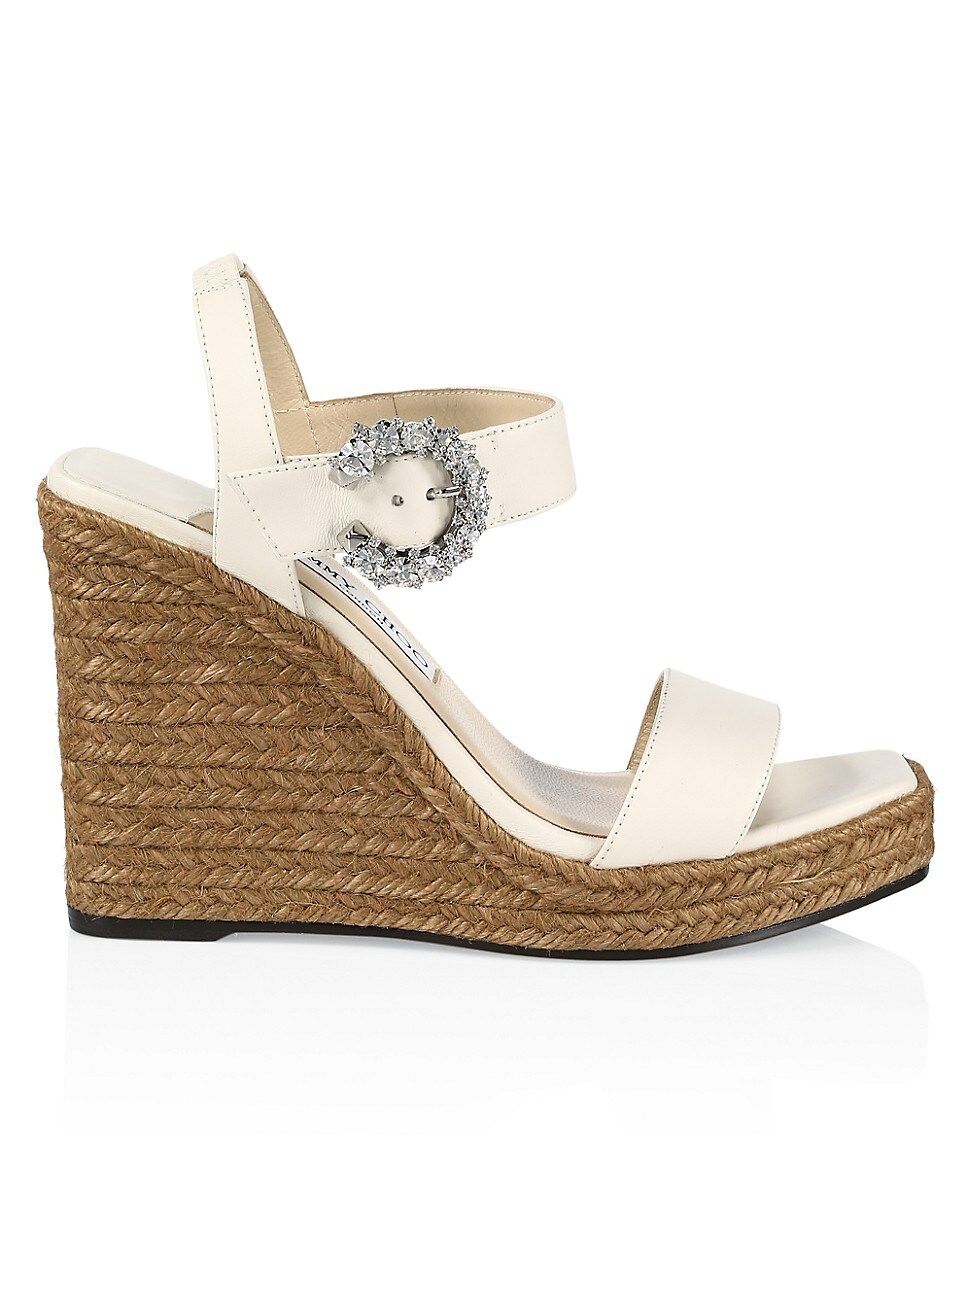 Mirabelle Crystal-Embellished Leather Espadrille Wedge Sandals | Saks Fifth Avenue